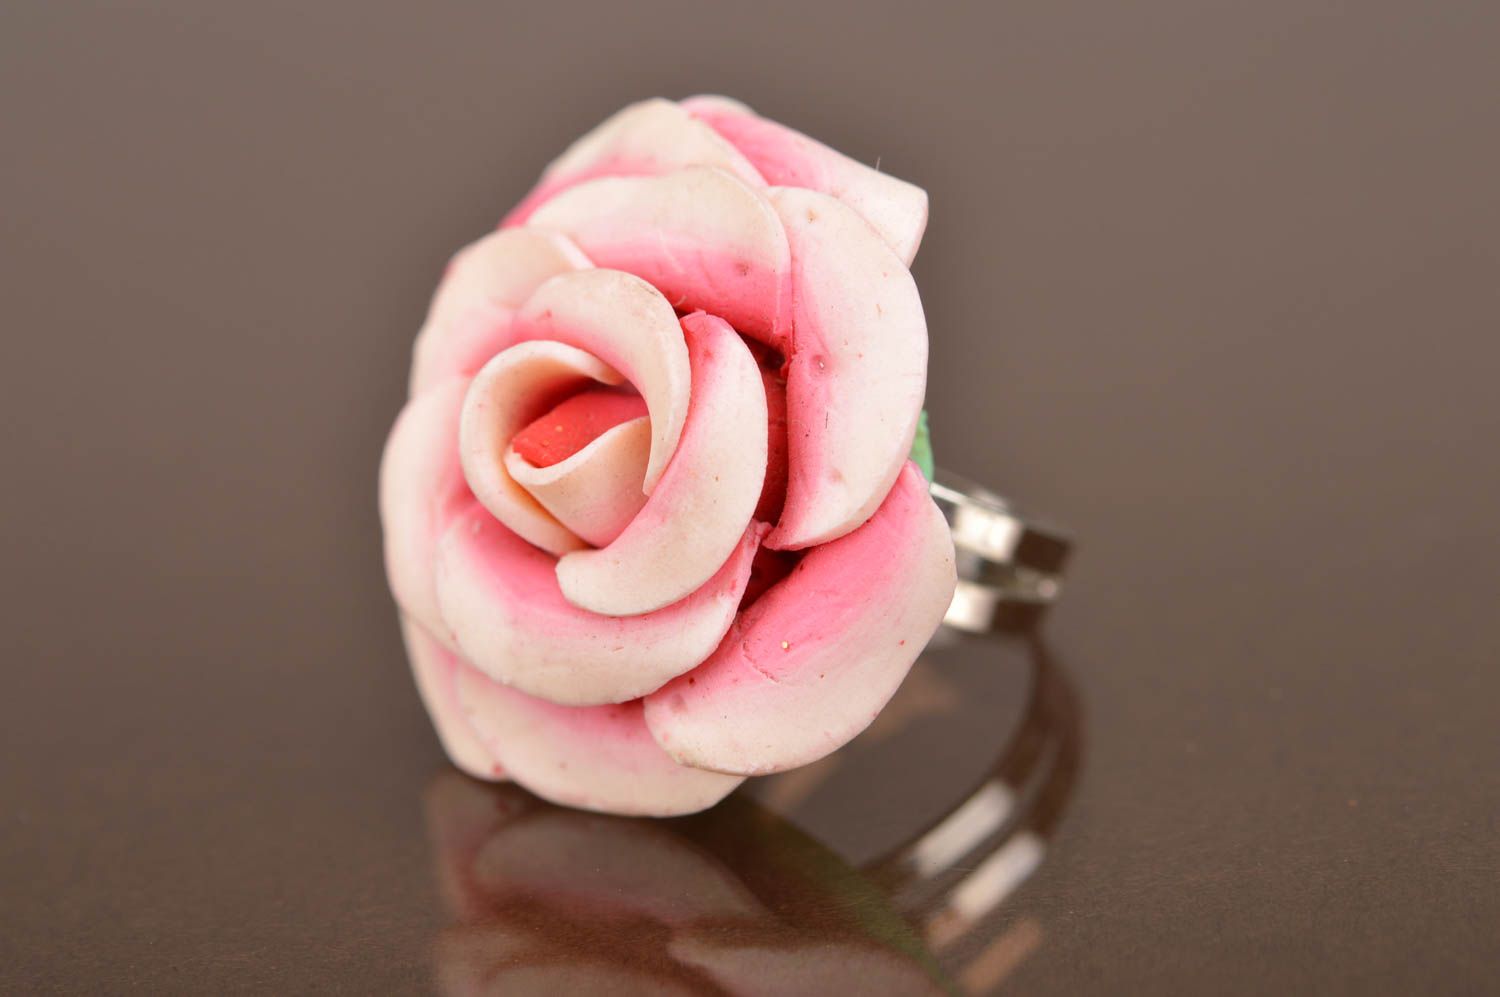 Кольцо цветок из полимерной глины розовое в виде розы крупное ручная работа фото 5